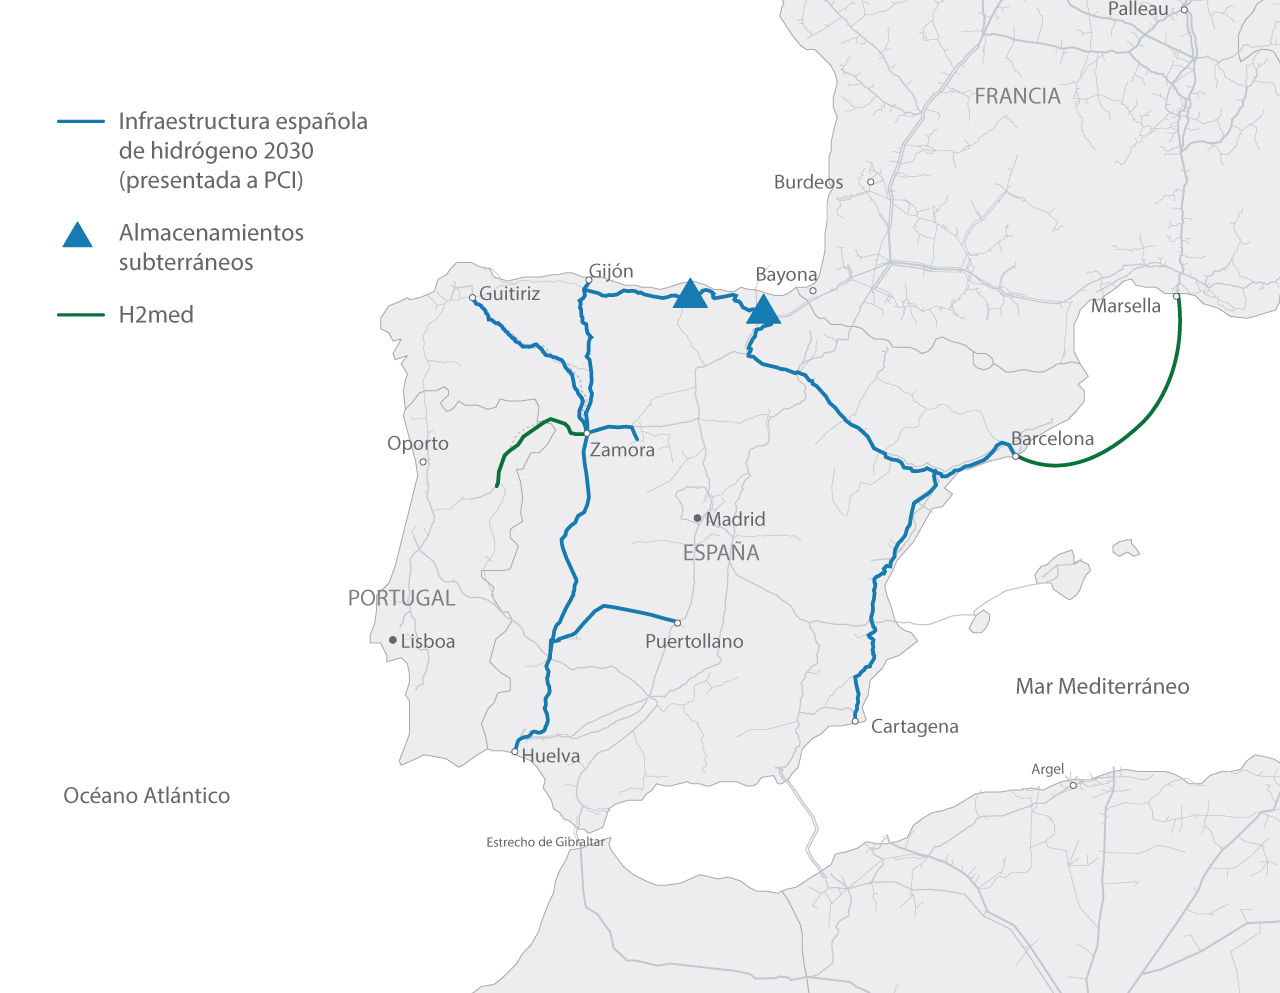  Infraestructura española de hidrógeno 2030 (presentada a PCI)